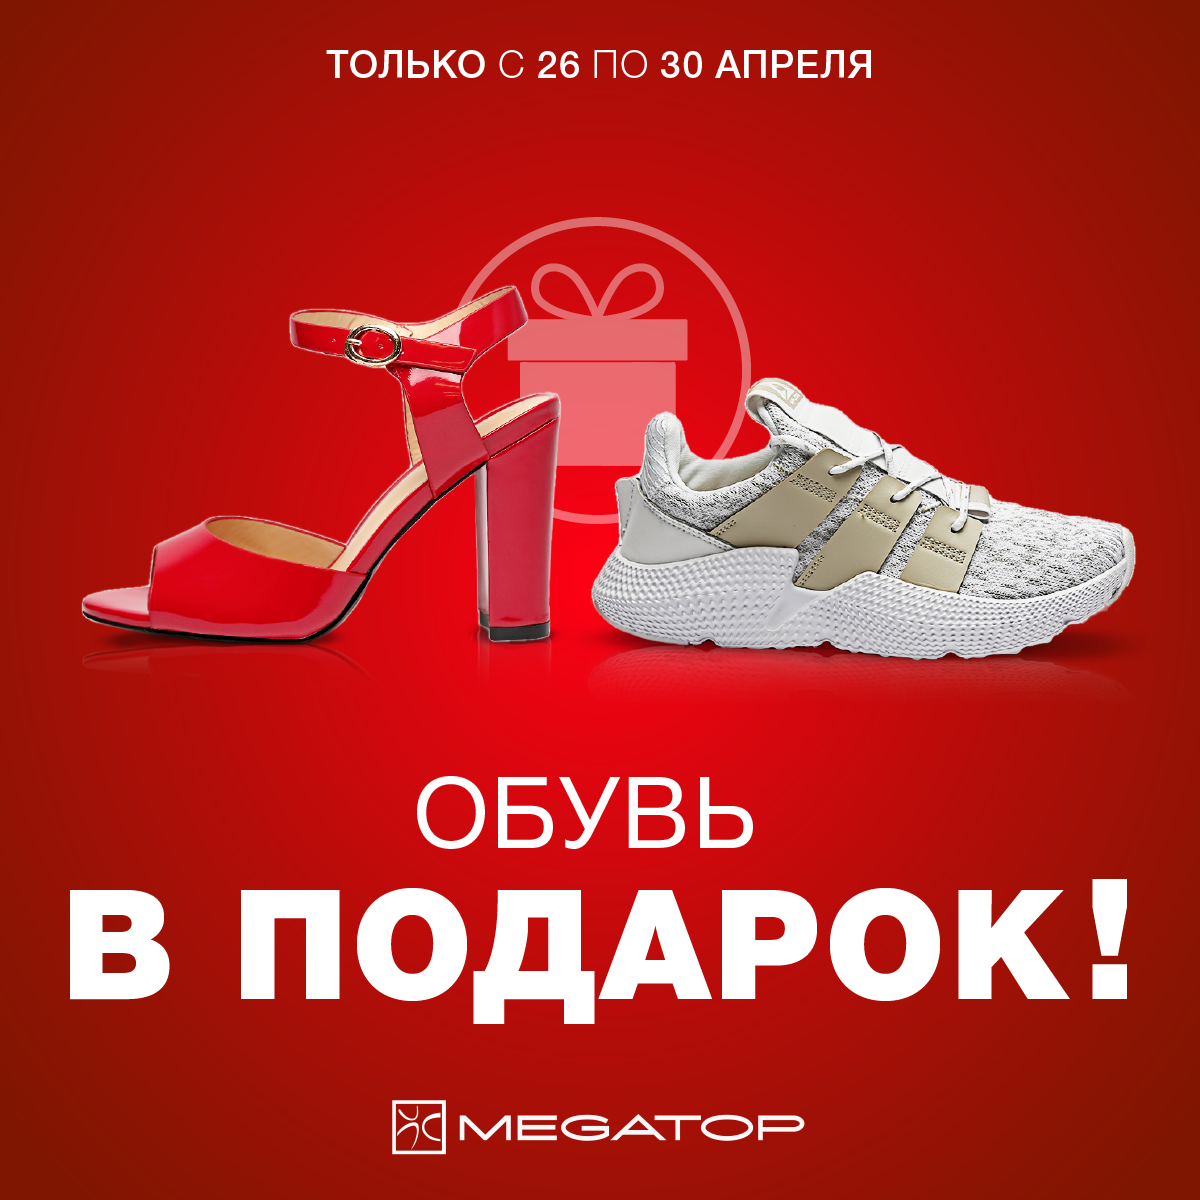 Двумстам пятидесяти рублям нет туфель. Акции в обувных магазинах. Обувь в подарок. Реклама обувного магазина. Баннер обувь.